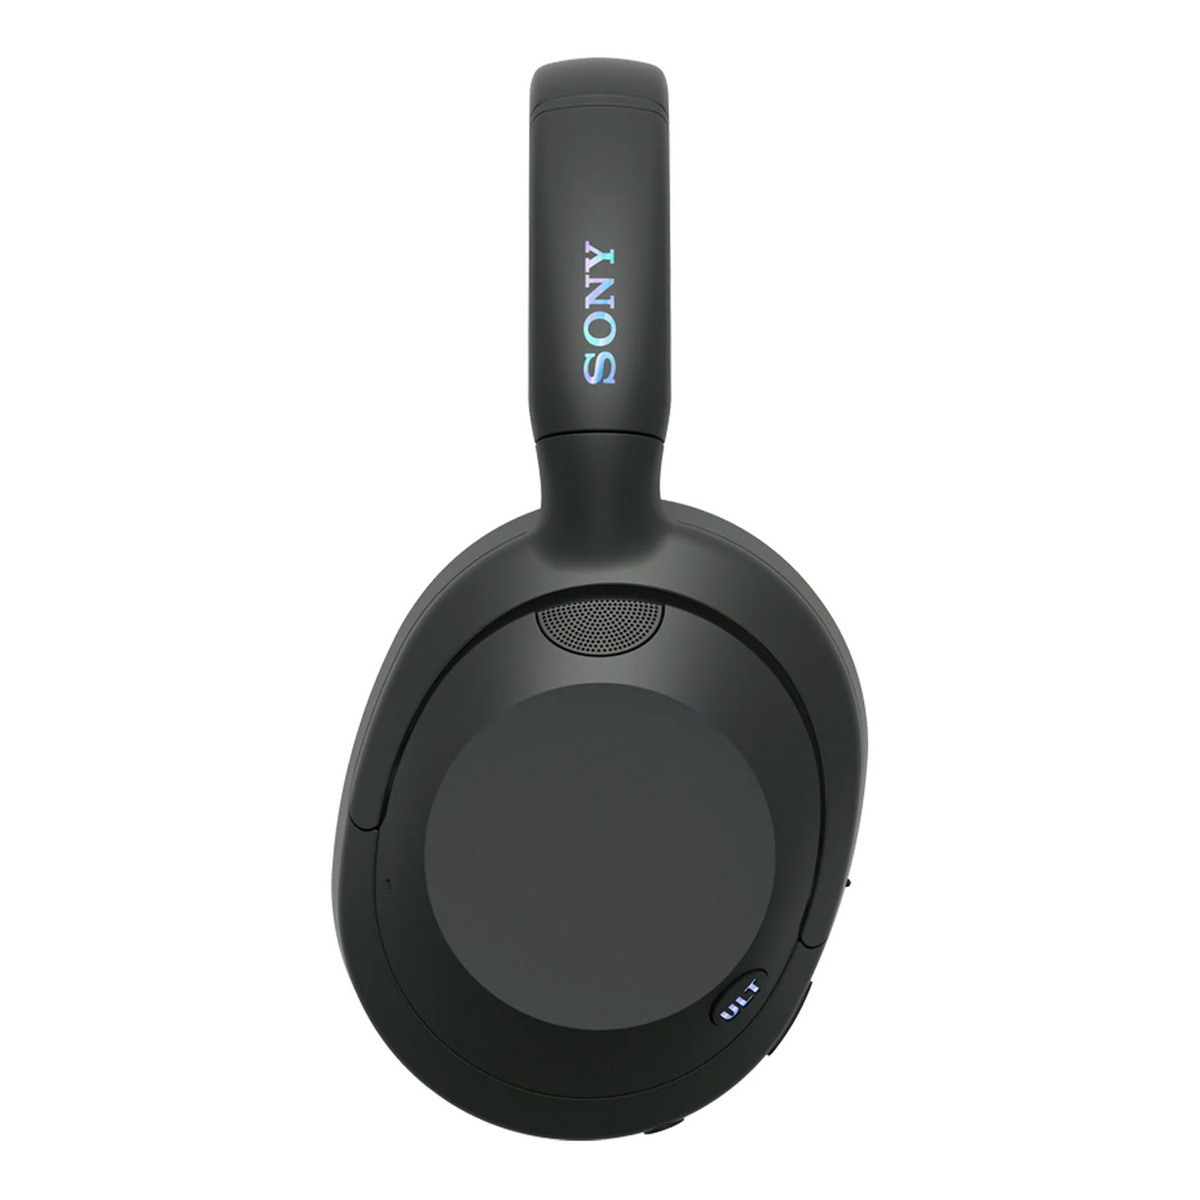 Sony ULT Wear Wireless Noise Canceling Headphones, Black, WHULT900N